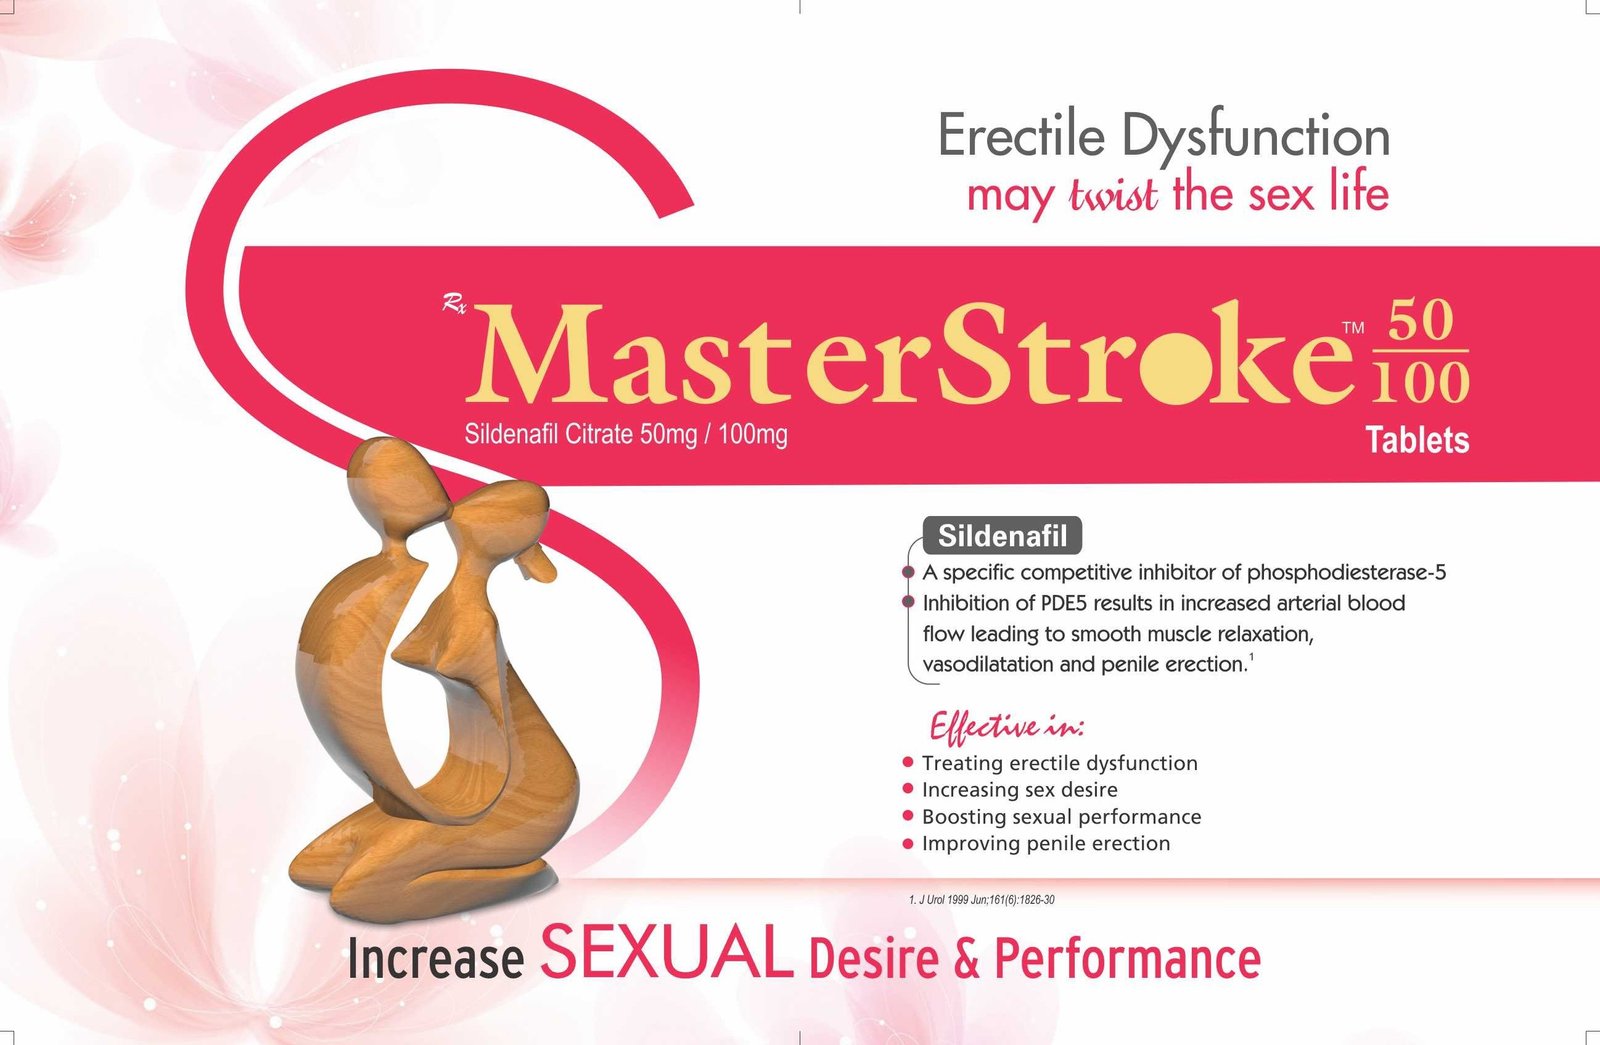 Master-Stroke